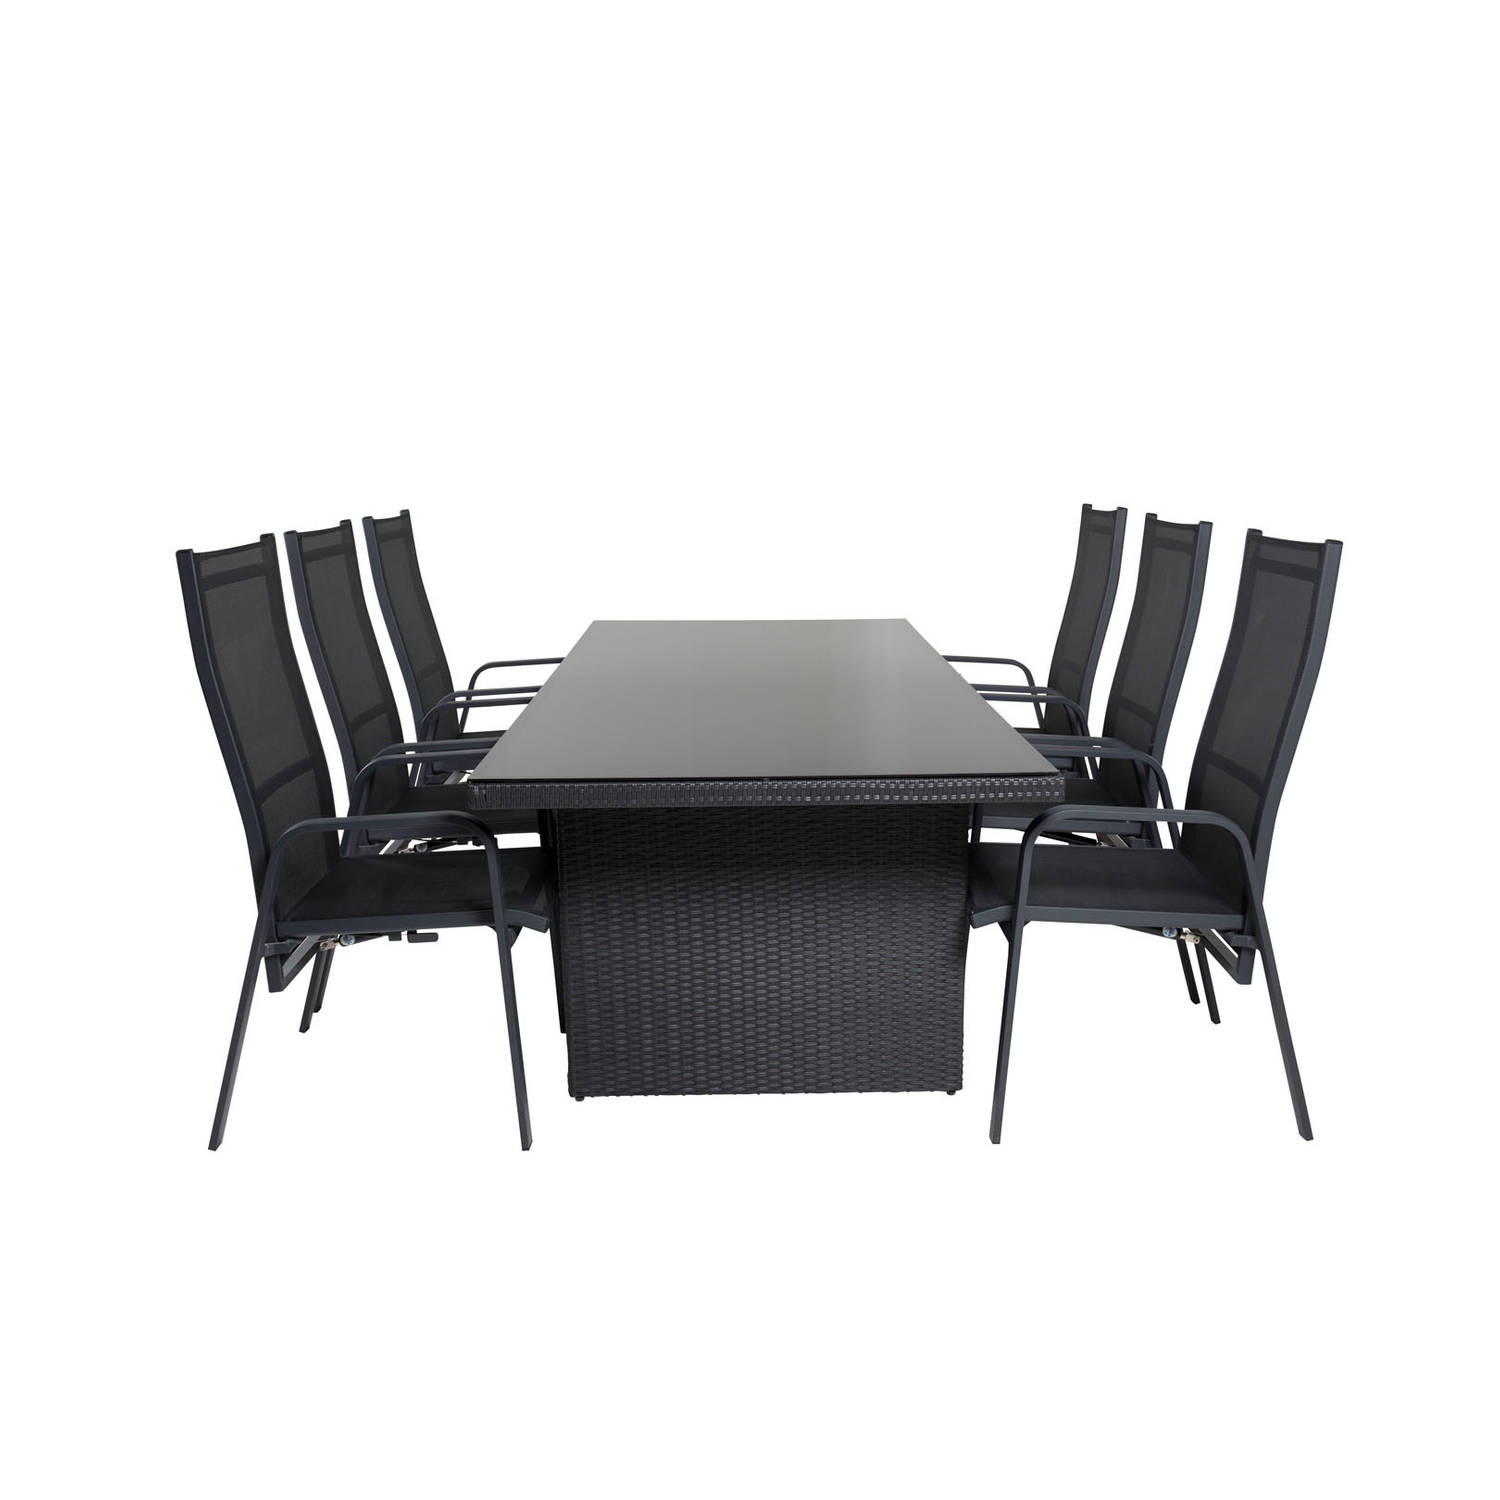 Padova tuinmeubelset tafel 100x200cm en 6 stoel Copacabana zwart.